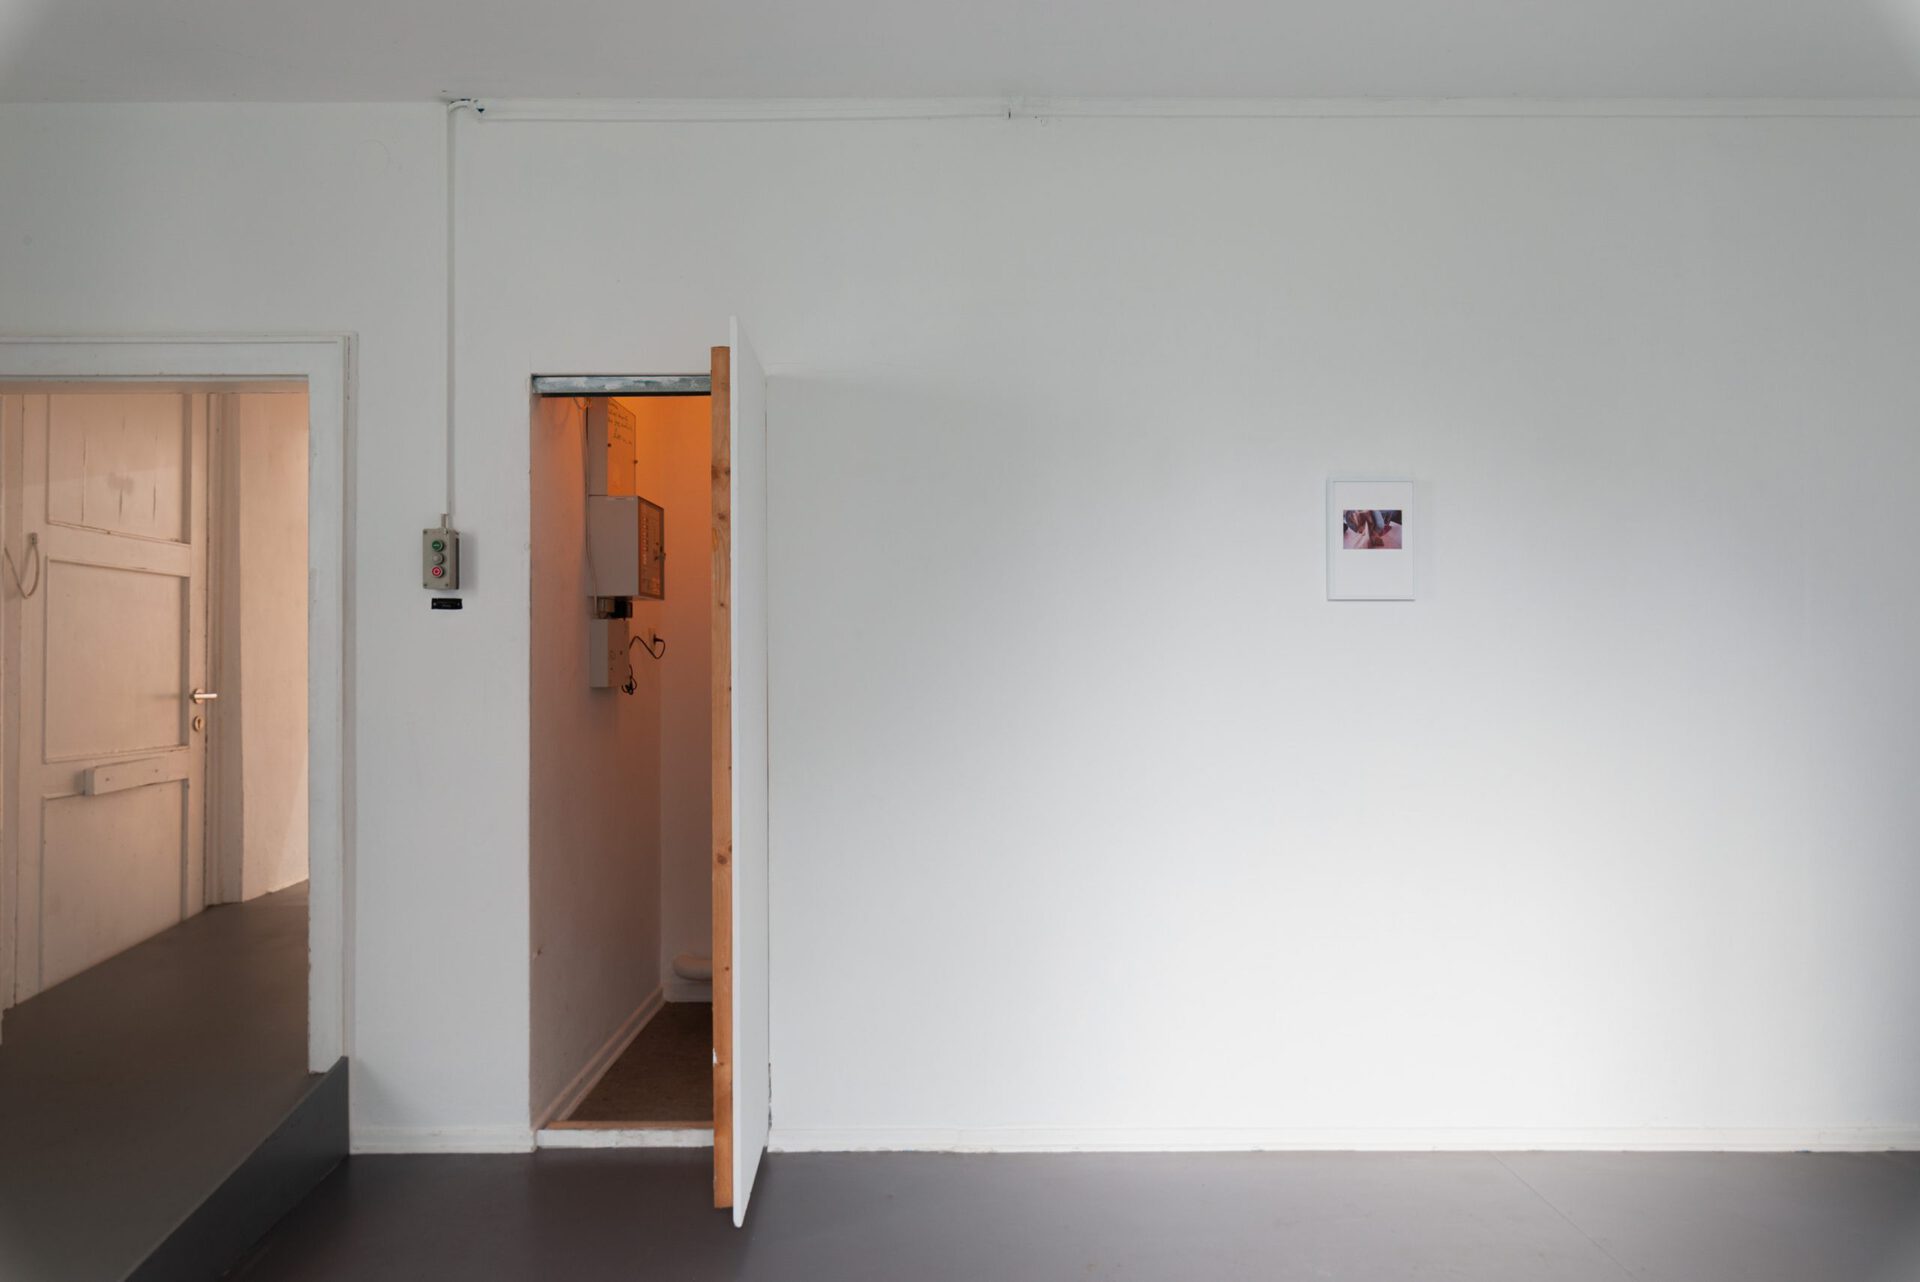 Mahalia Heydemann, Puttchen, 2021, Installation View at Kunstverein Braunschweig 2021, Courtesy the artist and Kunstverein Braunschweig. Photo: Stefan Stark